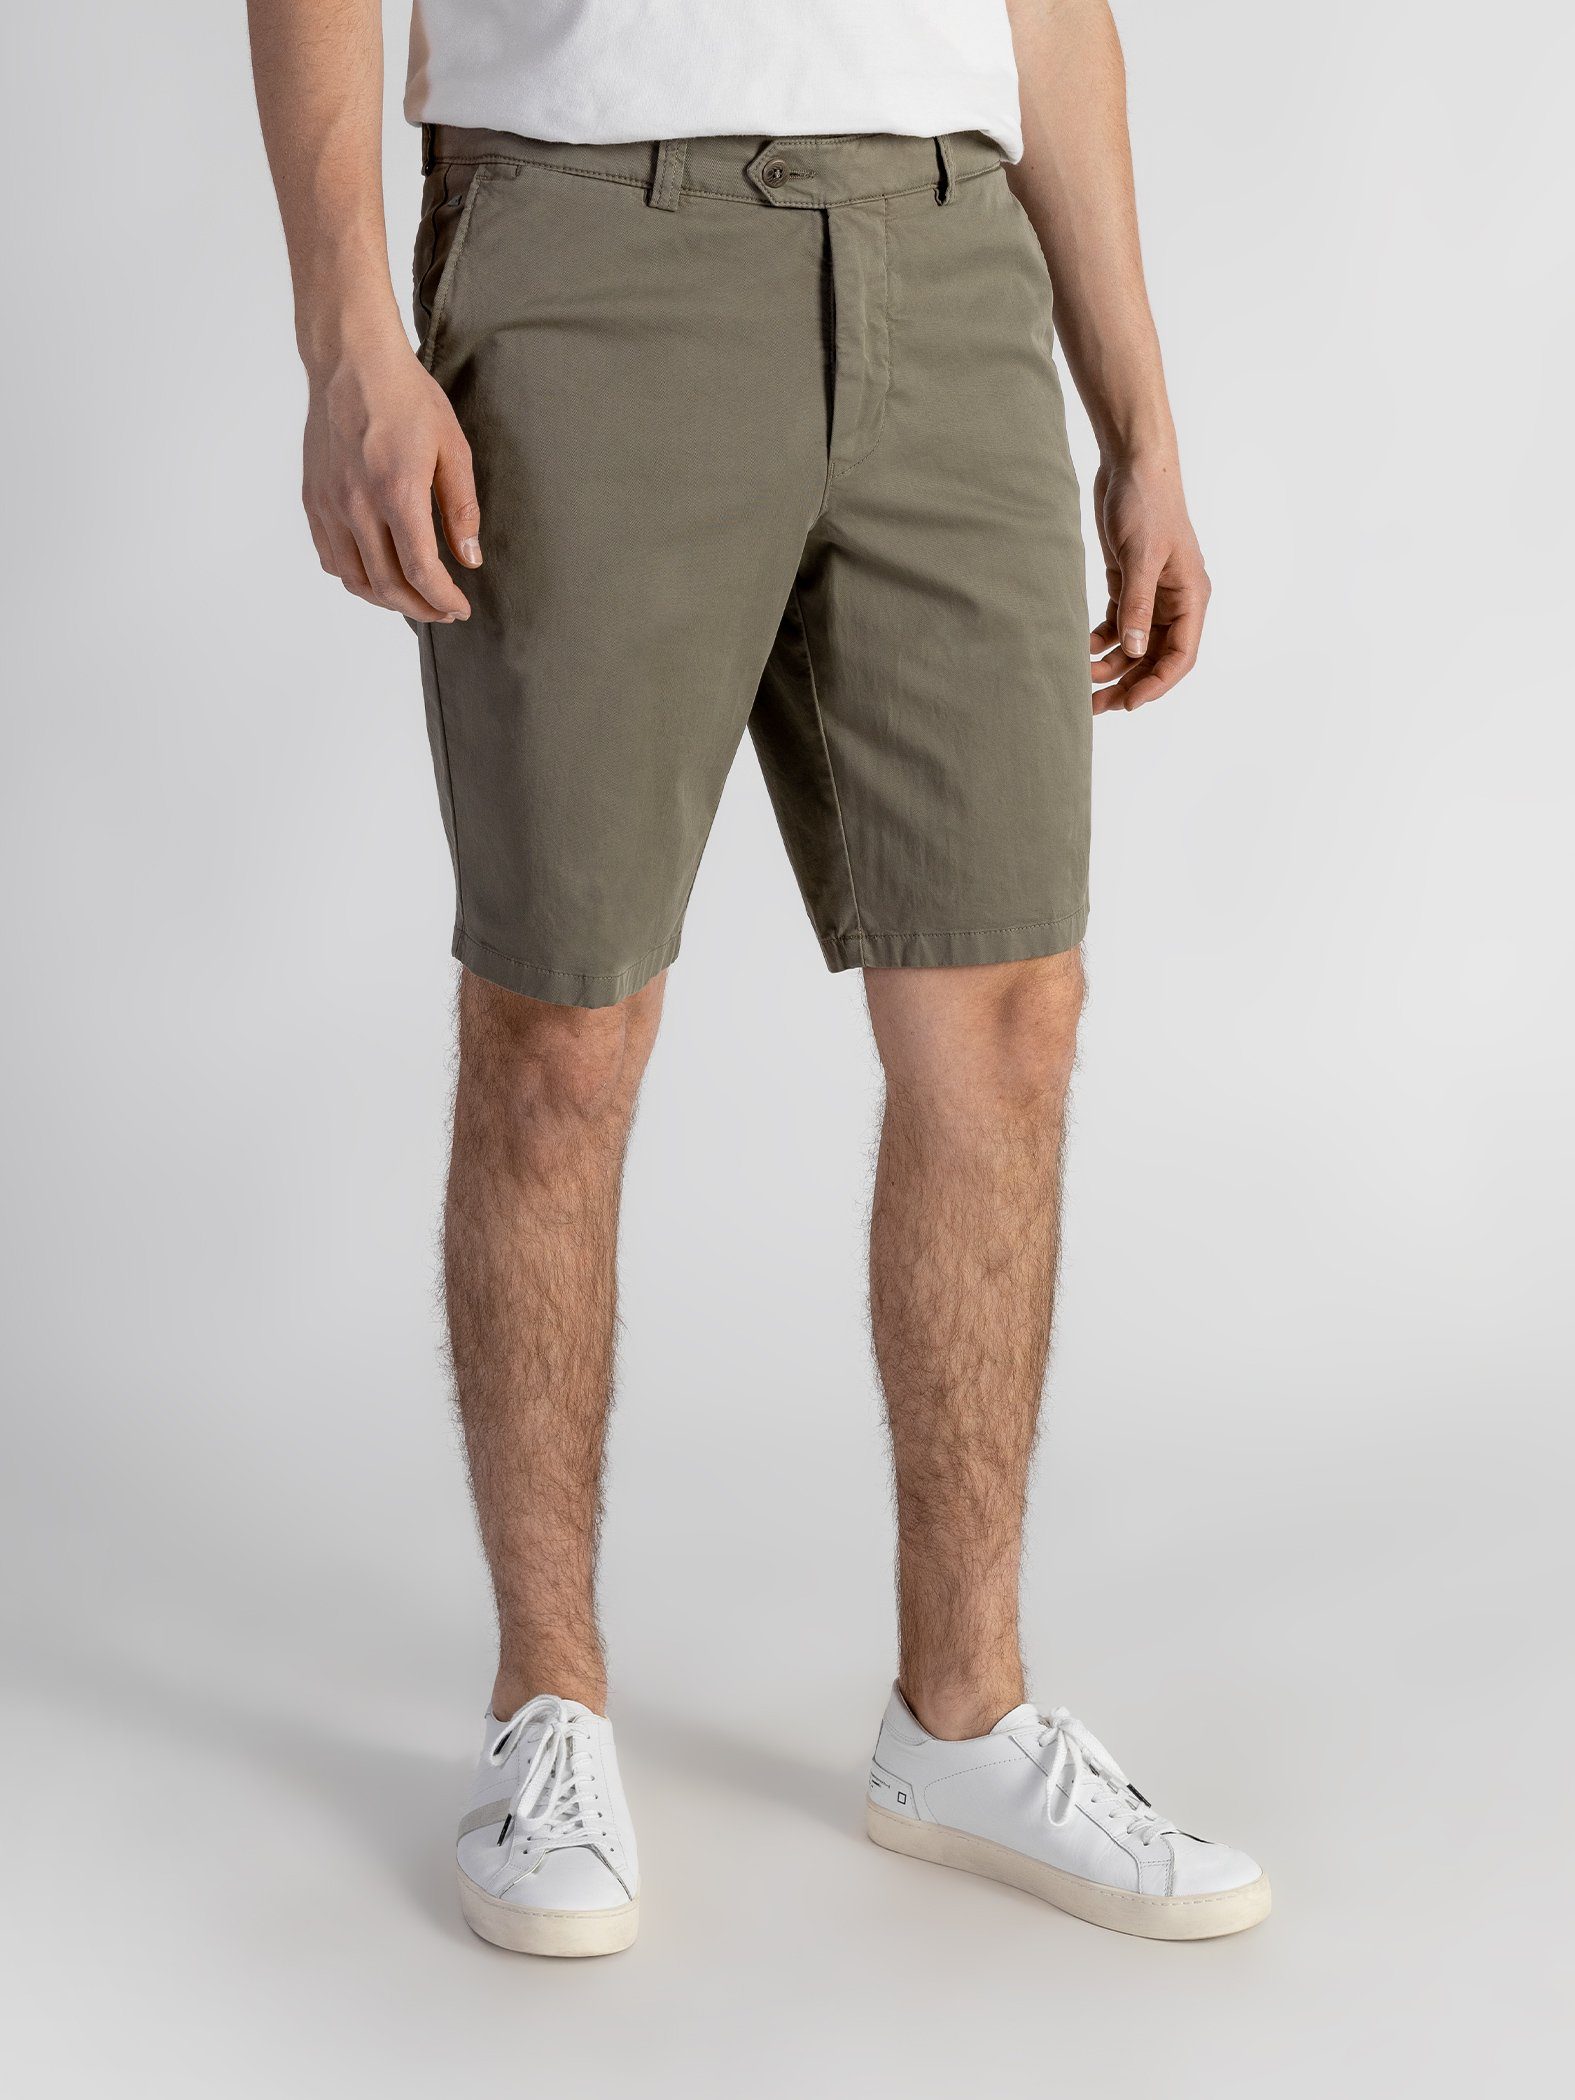 TwoMates Shorts Shorts mit Bund, elastischem Farbauswahl, GOTS-zertifiziert olivgrün